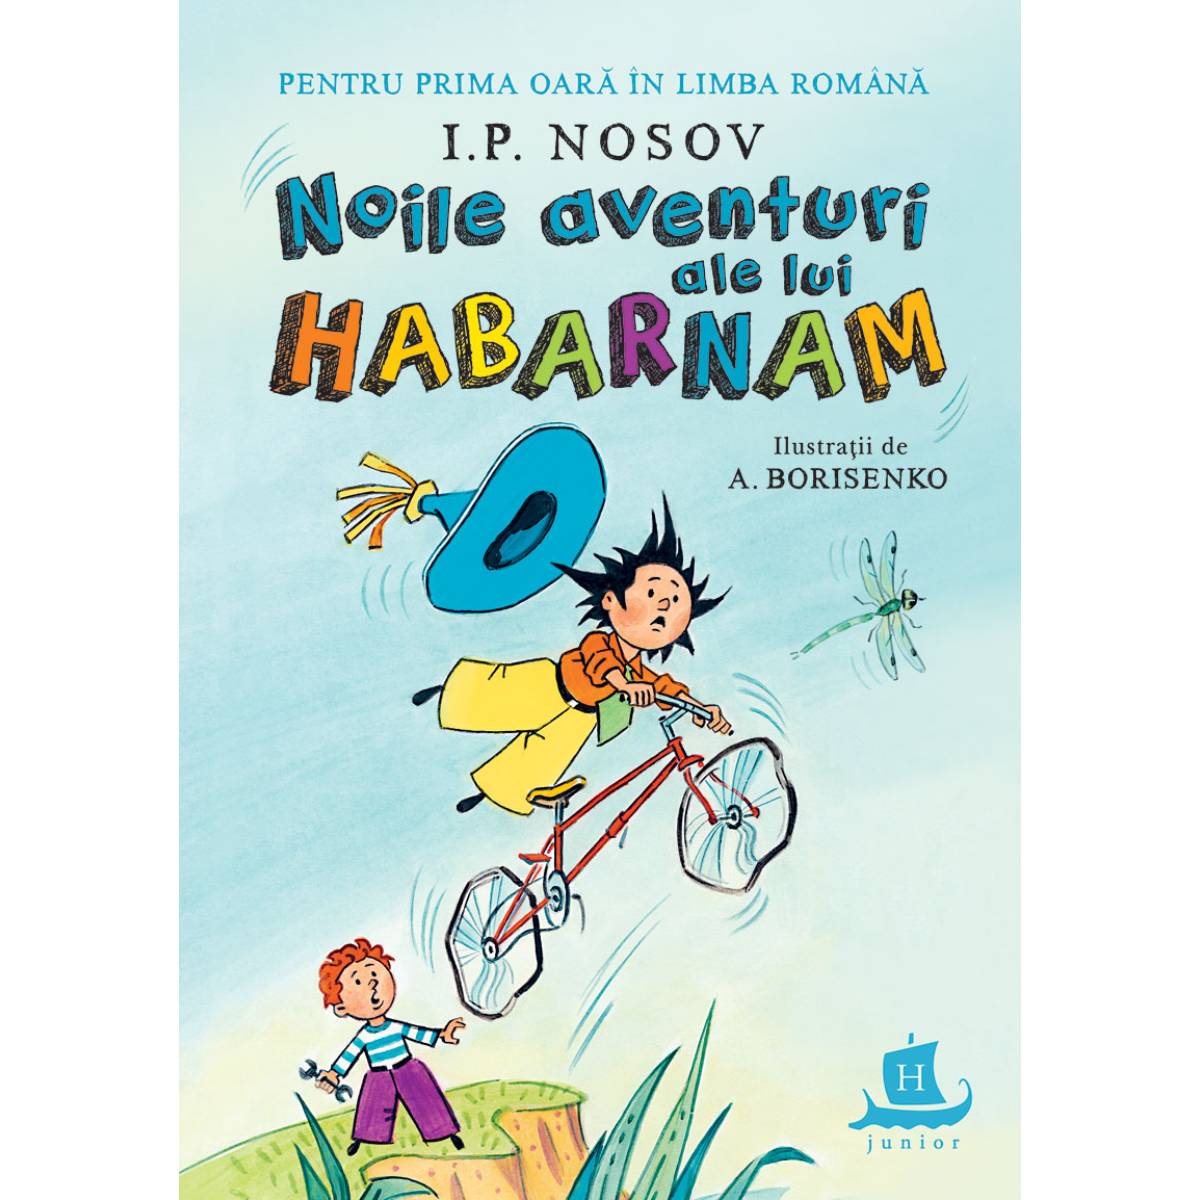 Noile aventuri ale lui Habarnam, Igor Nosov Humanitas